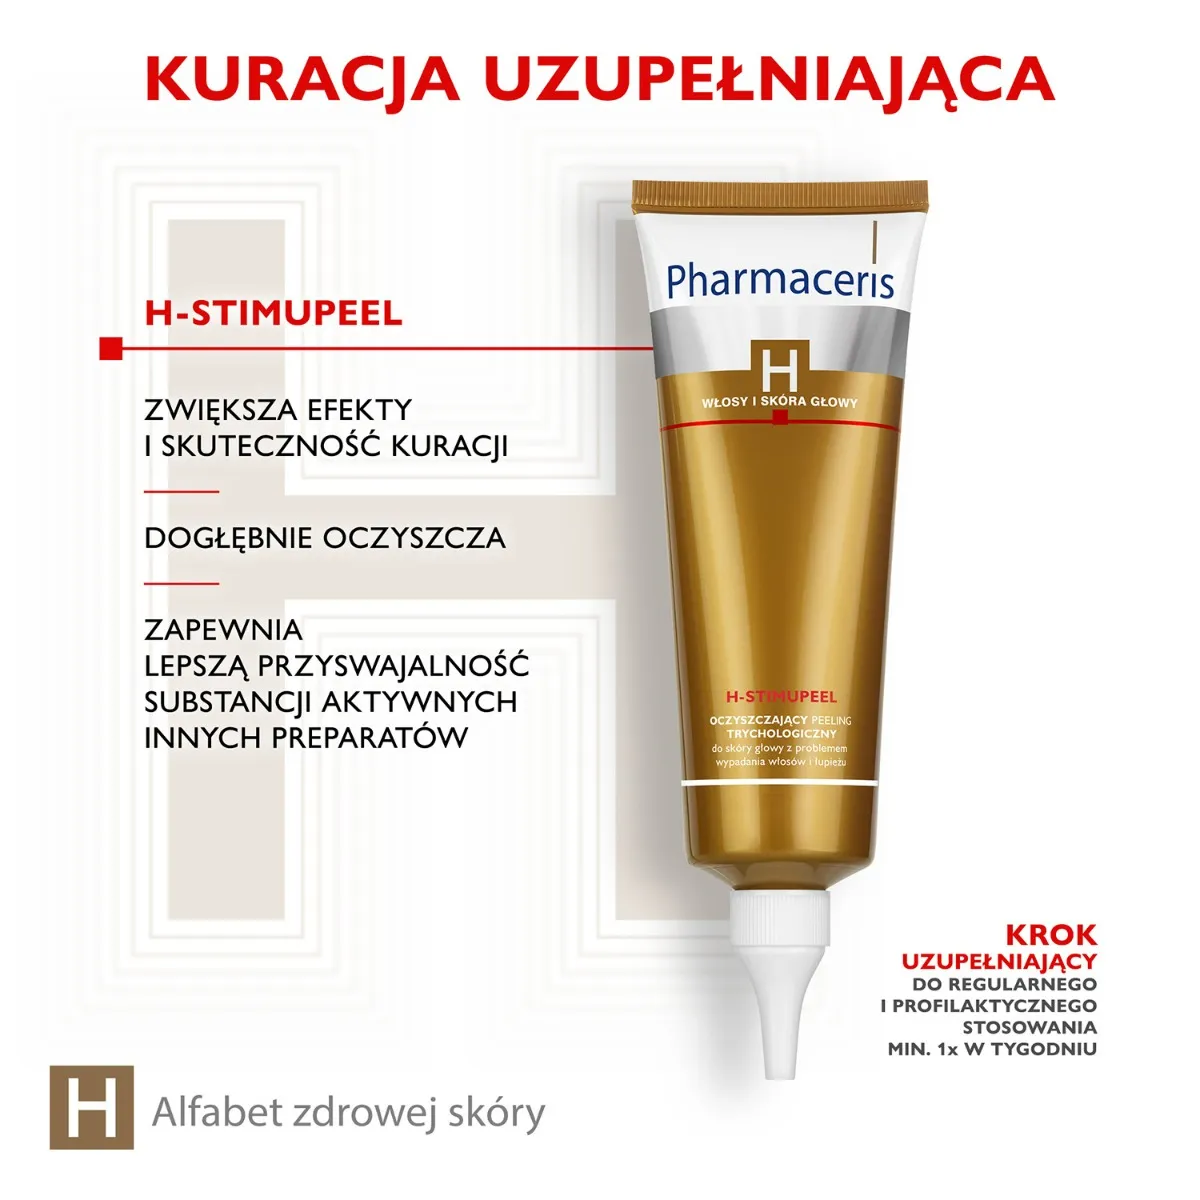 Pharmaceris H Stimupeel, oczyszczający peeling trychologiczny, 125 ml 